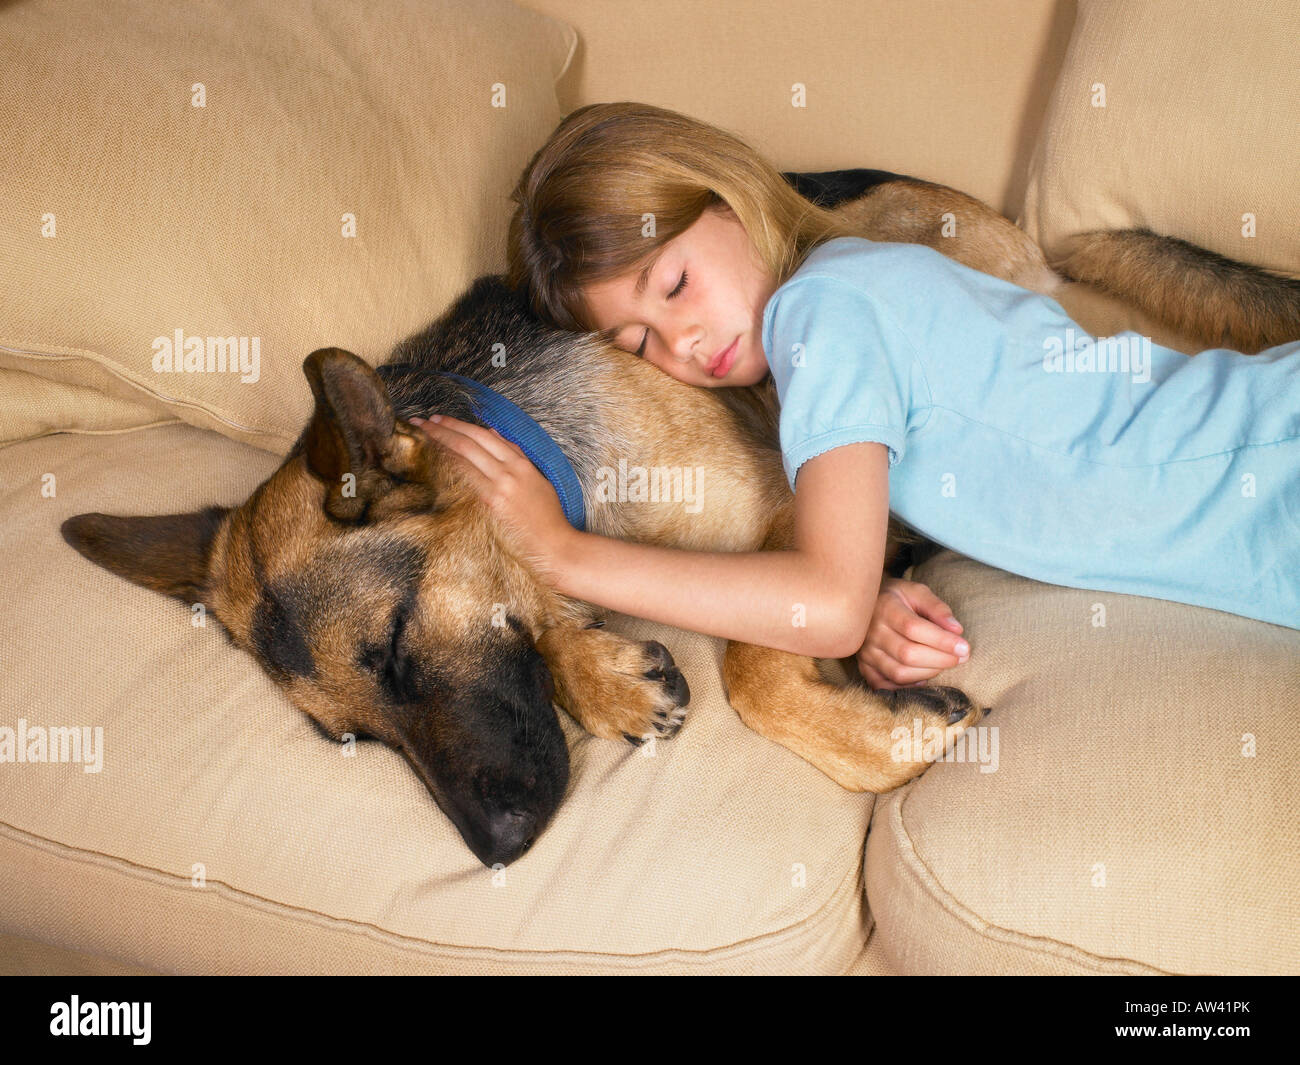 Young girl sleeping on her dog. Stock Photo